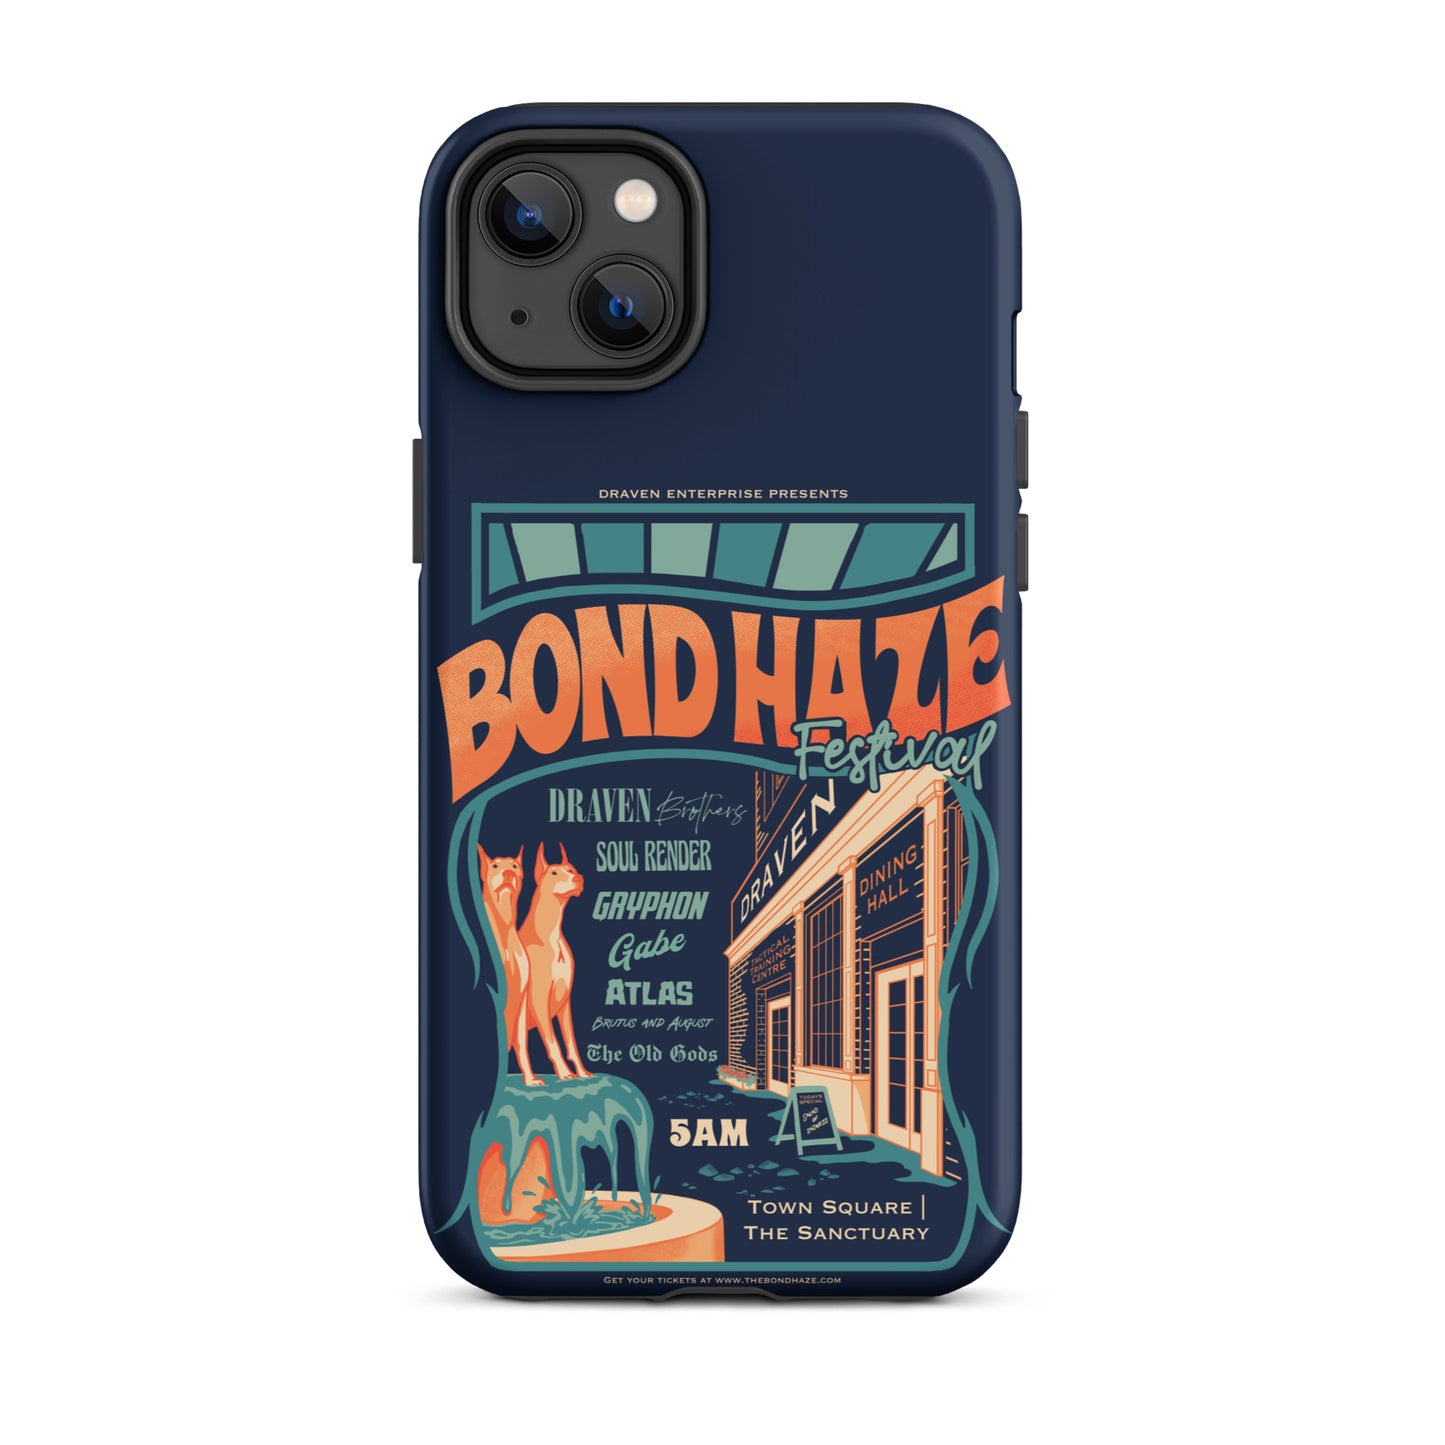 Bond Haze Festival iPhone Case | The Bonds That Tie